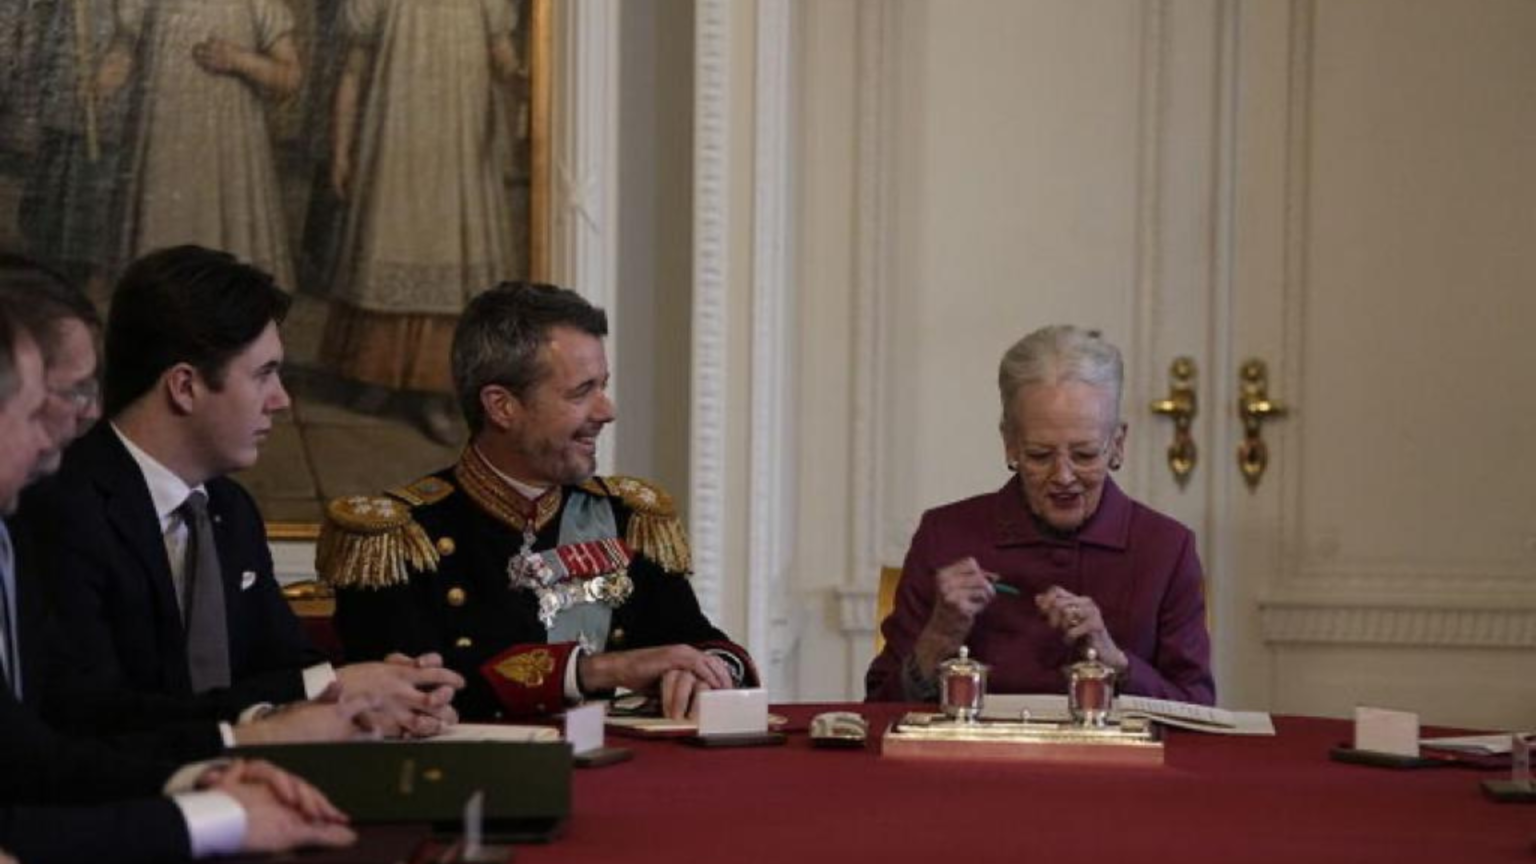 Danimarca, la regina Margrethe ha abdicato e Federico X è salito al trono